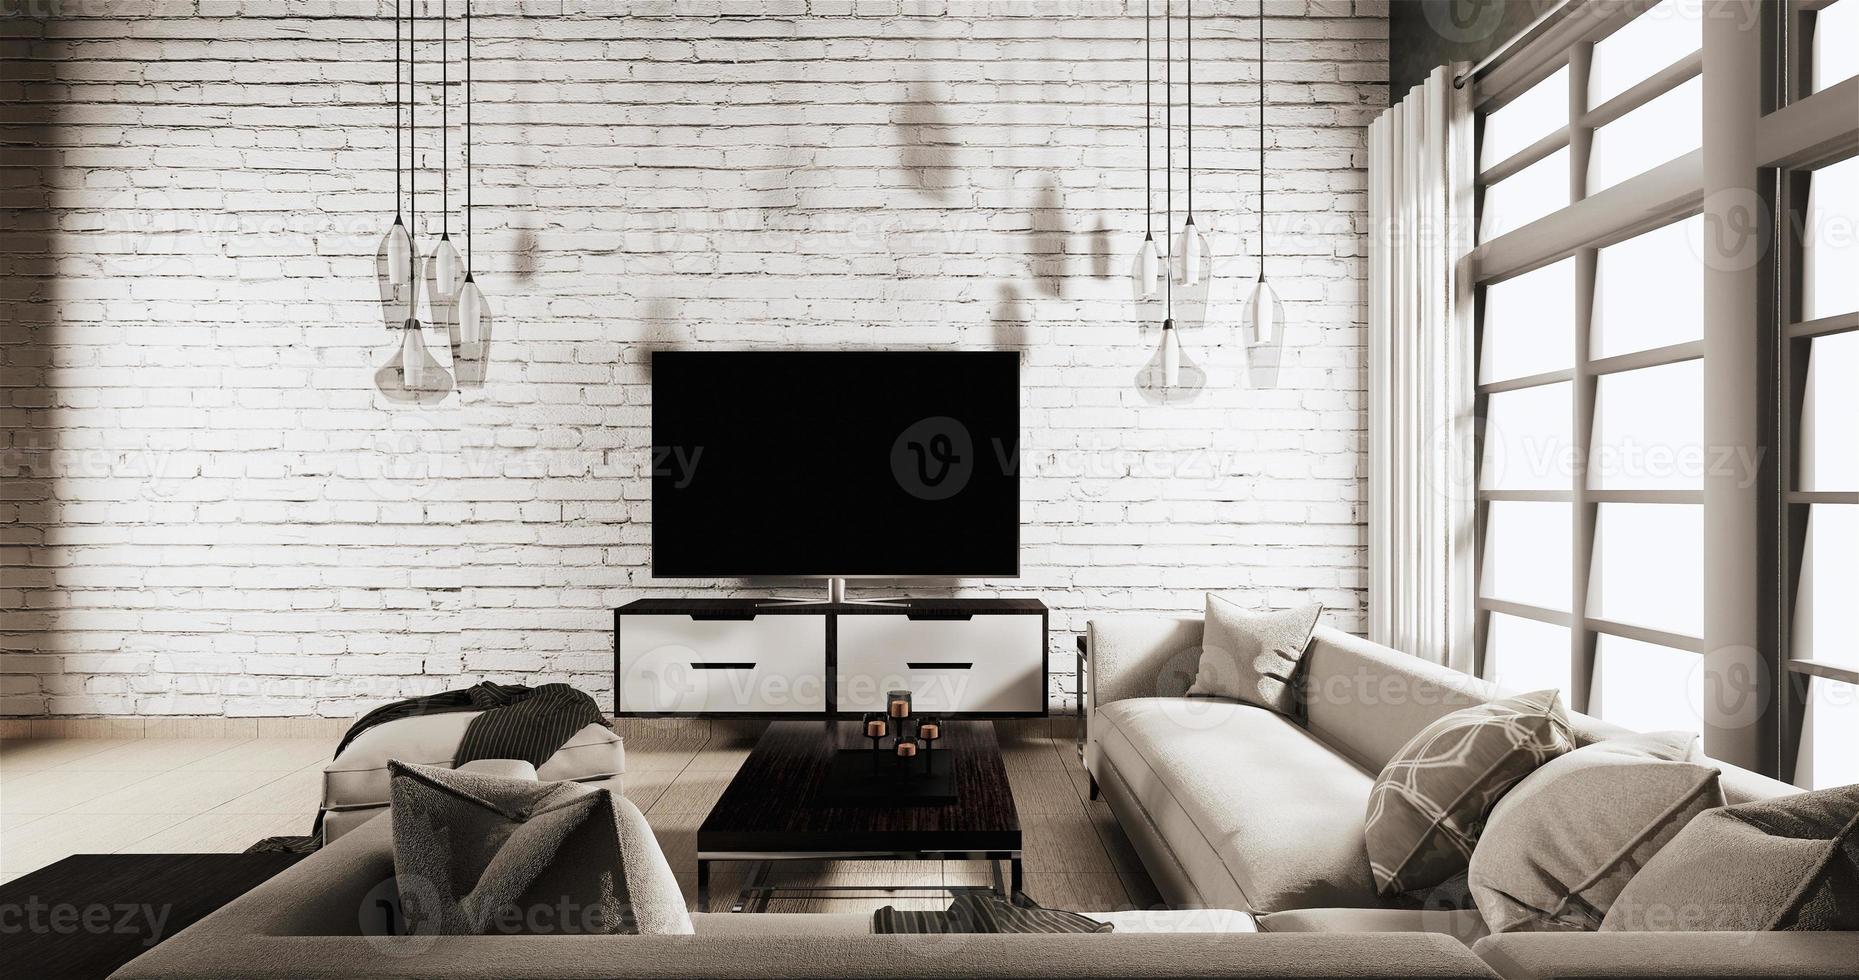 Smart TV en el gabinete en la sala de estar estilo loft con pared de ladrillo blanco sobre piso de madera y sofá sillón. Representación 3D foto